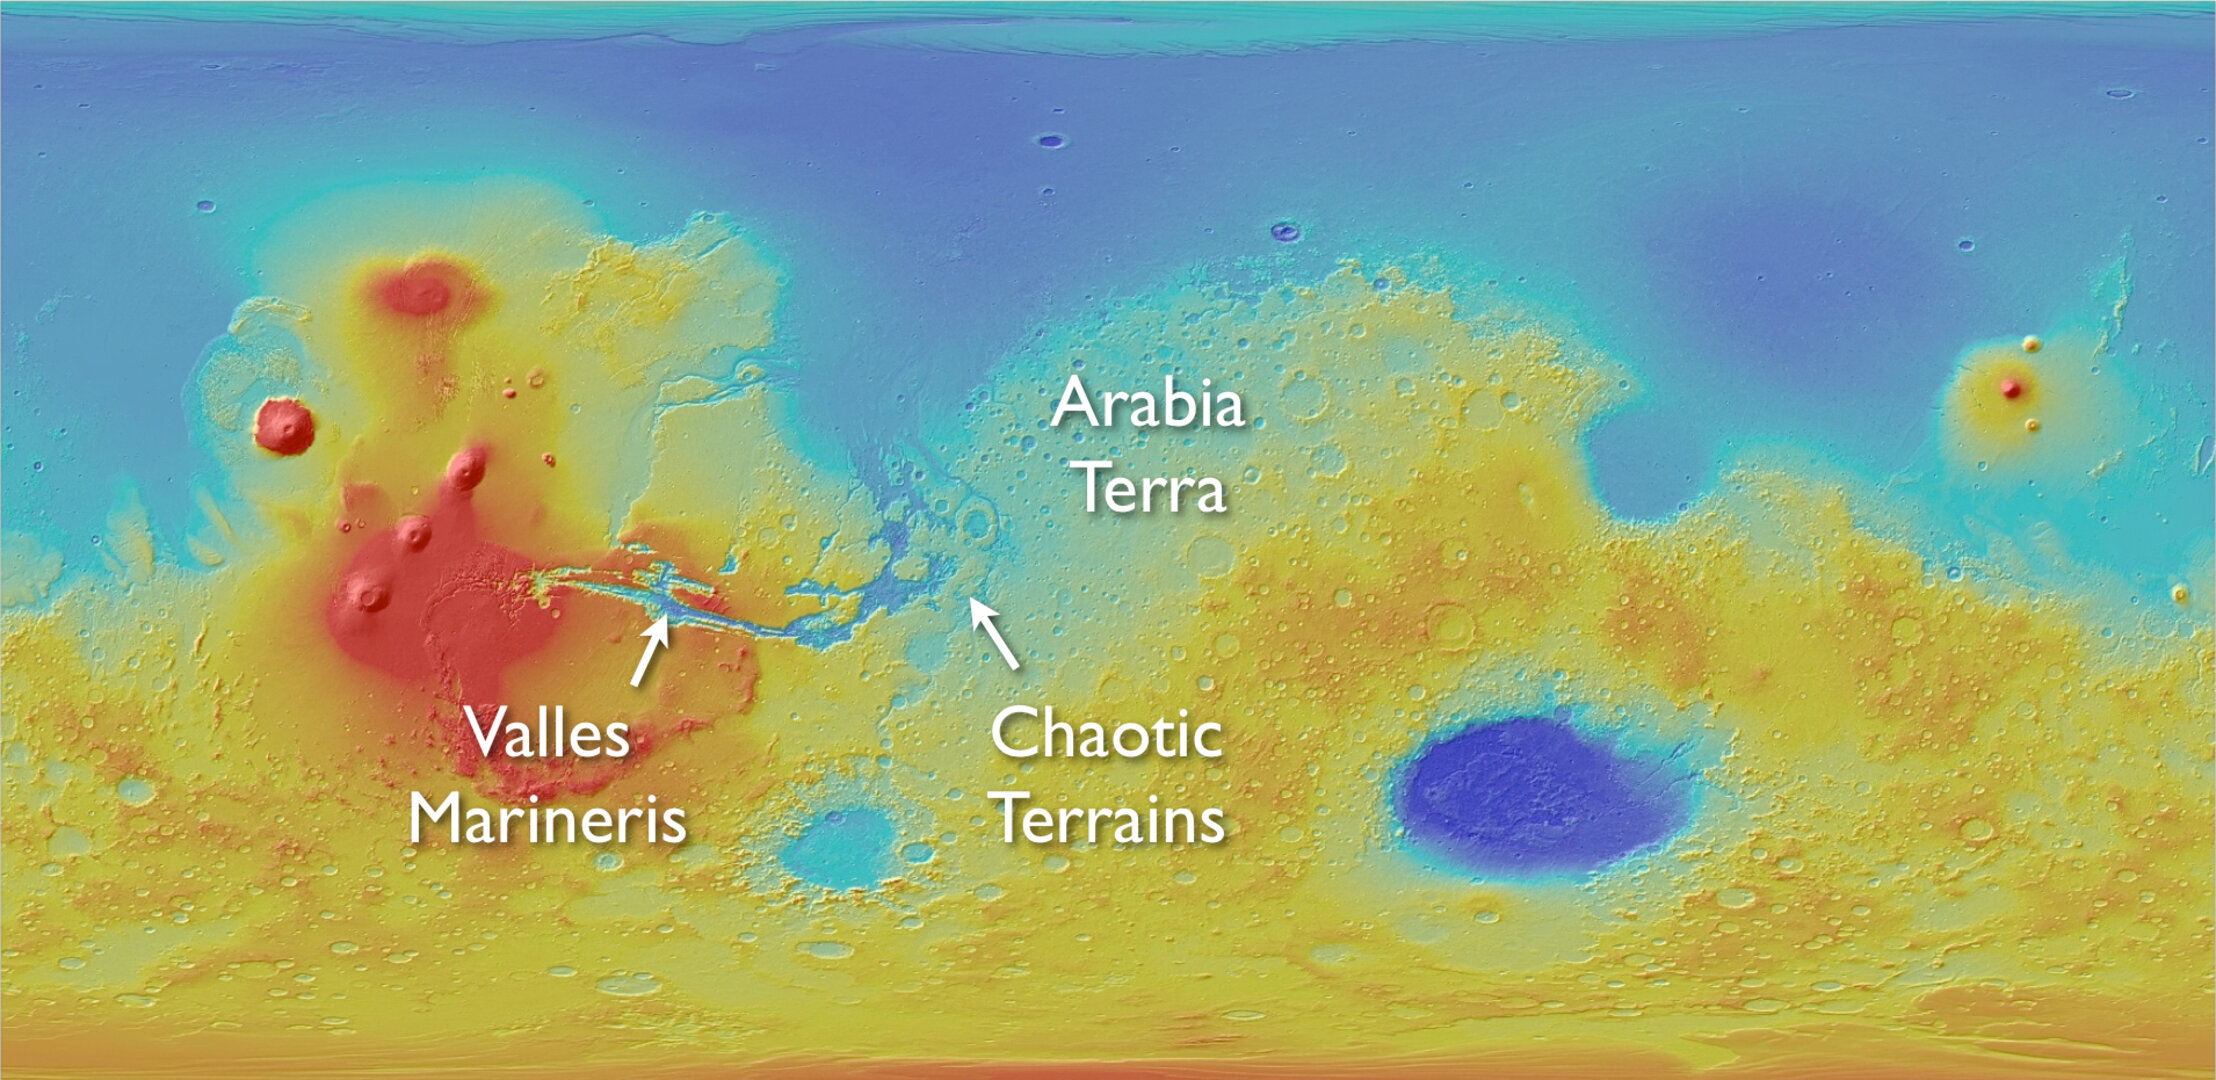 Areas showing LTD on Mars